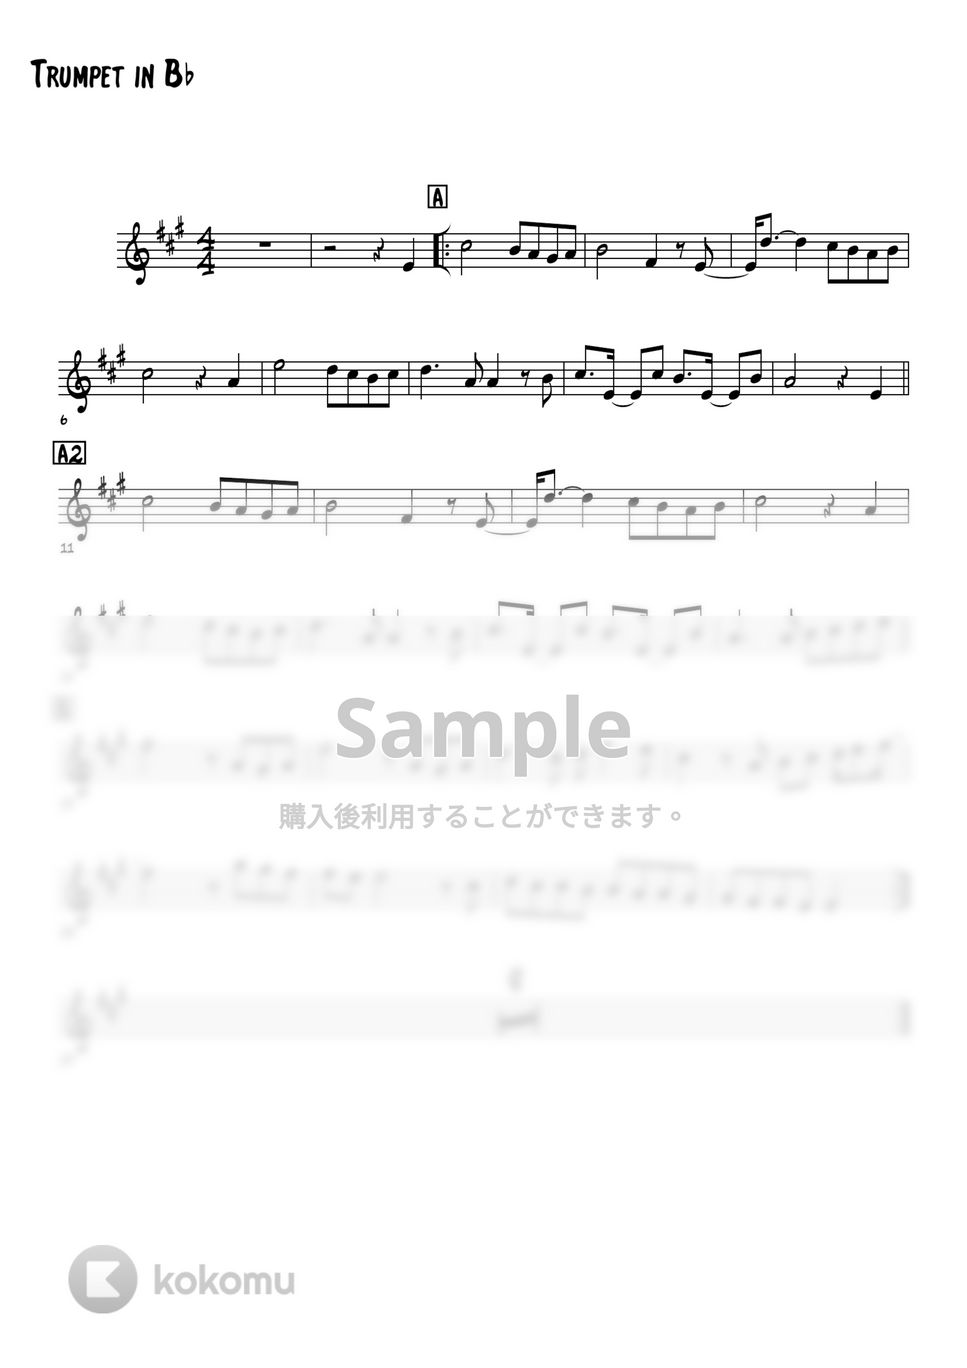 さだまさし - 北の国から－遙かなる大地より－ (トランペットメロディー楽譜) by 高田将利